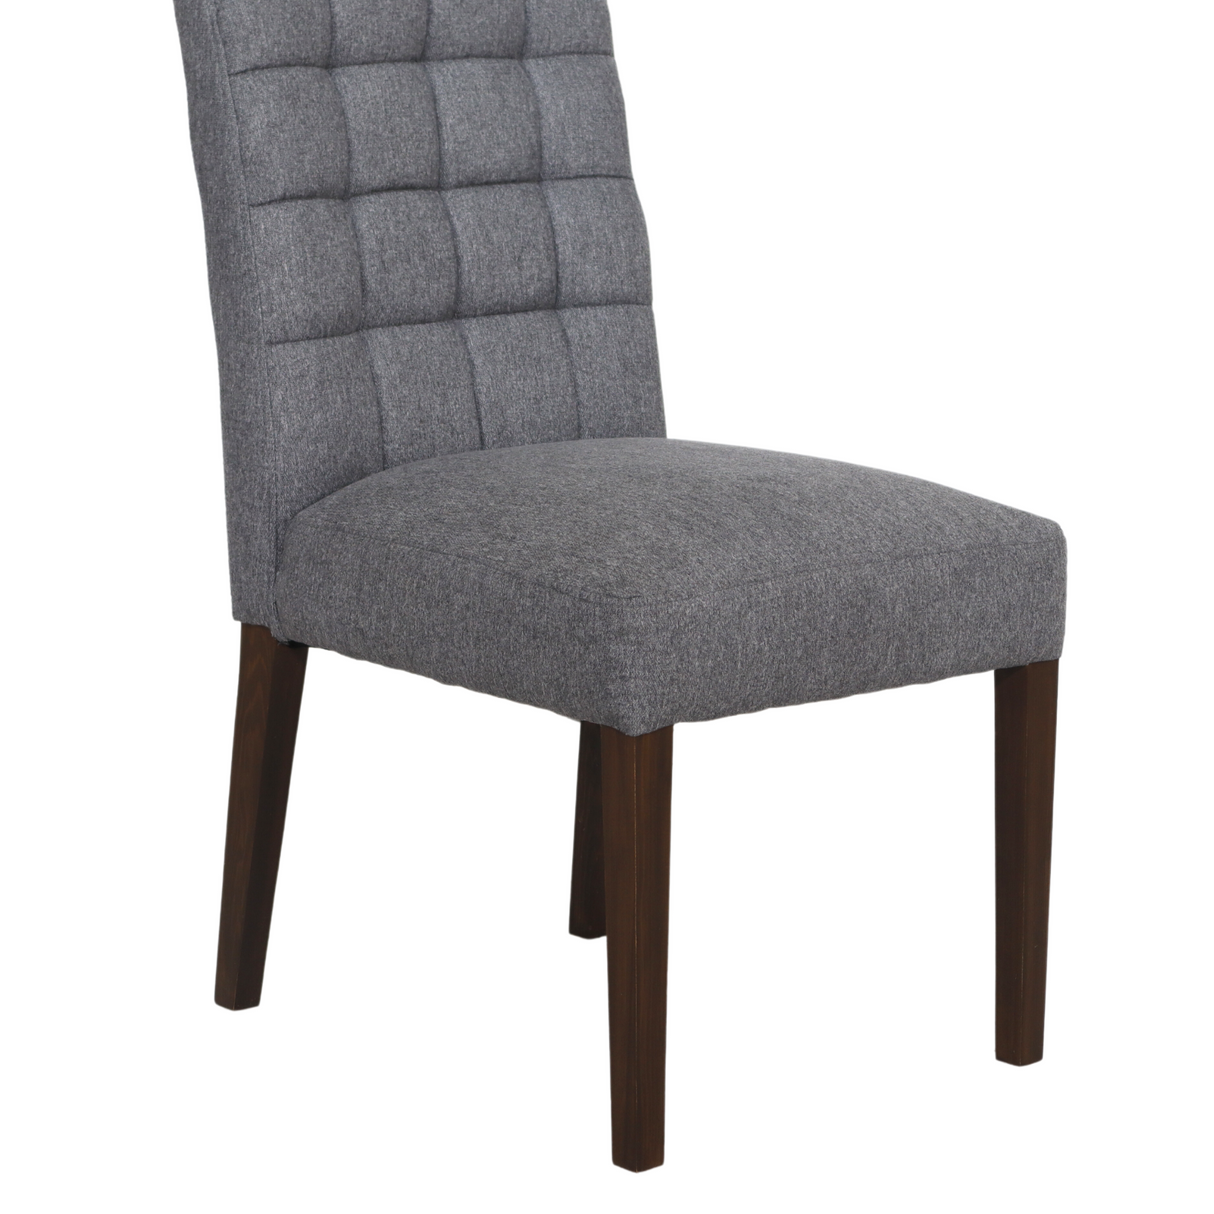 PAM Solid Wood Dining Chair Furnigo